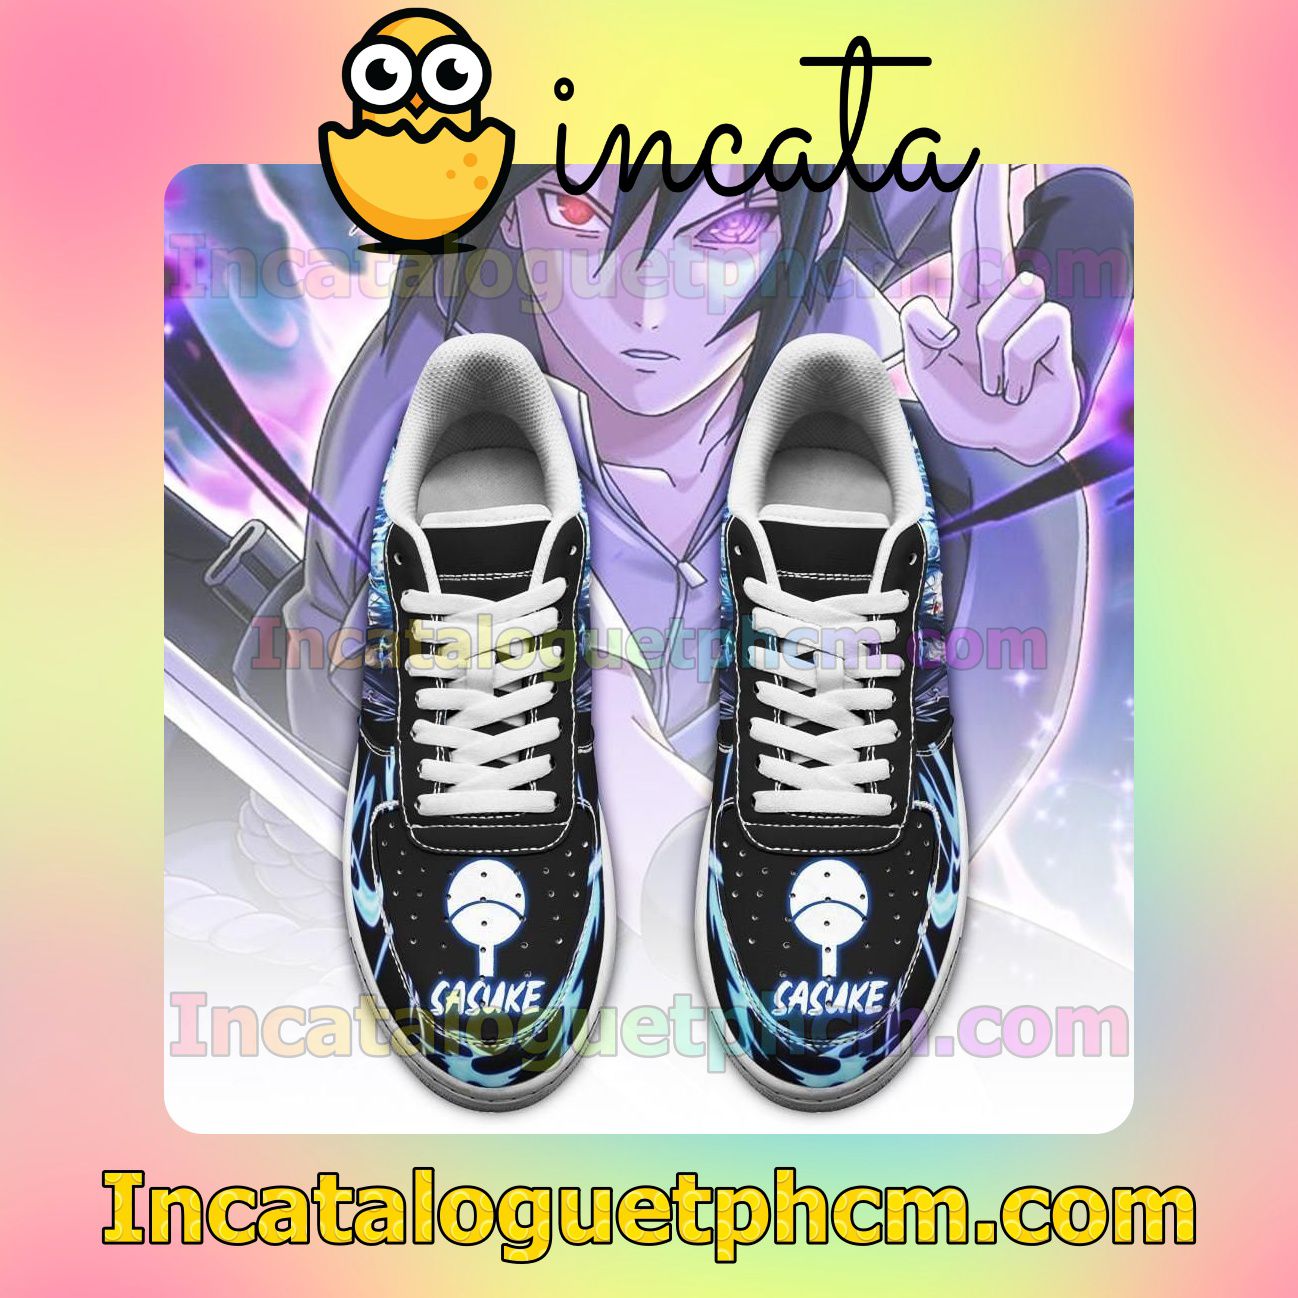 Around Me Sasuke Uchiha Naruto Anime Nike Low Shoes Sneakers